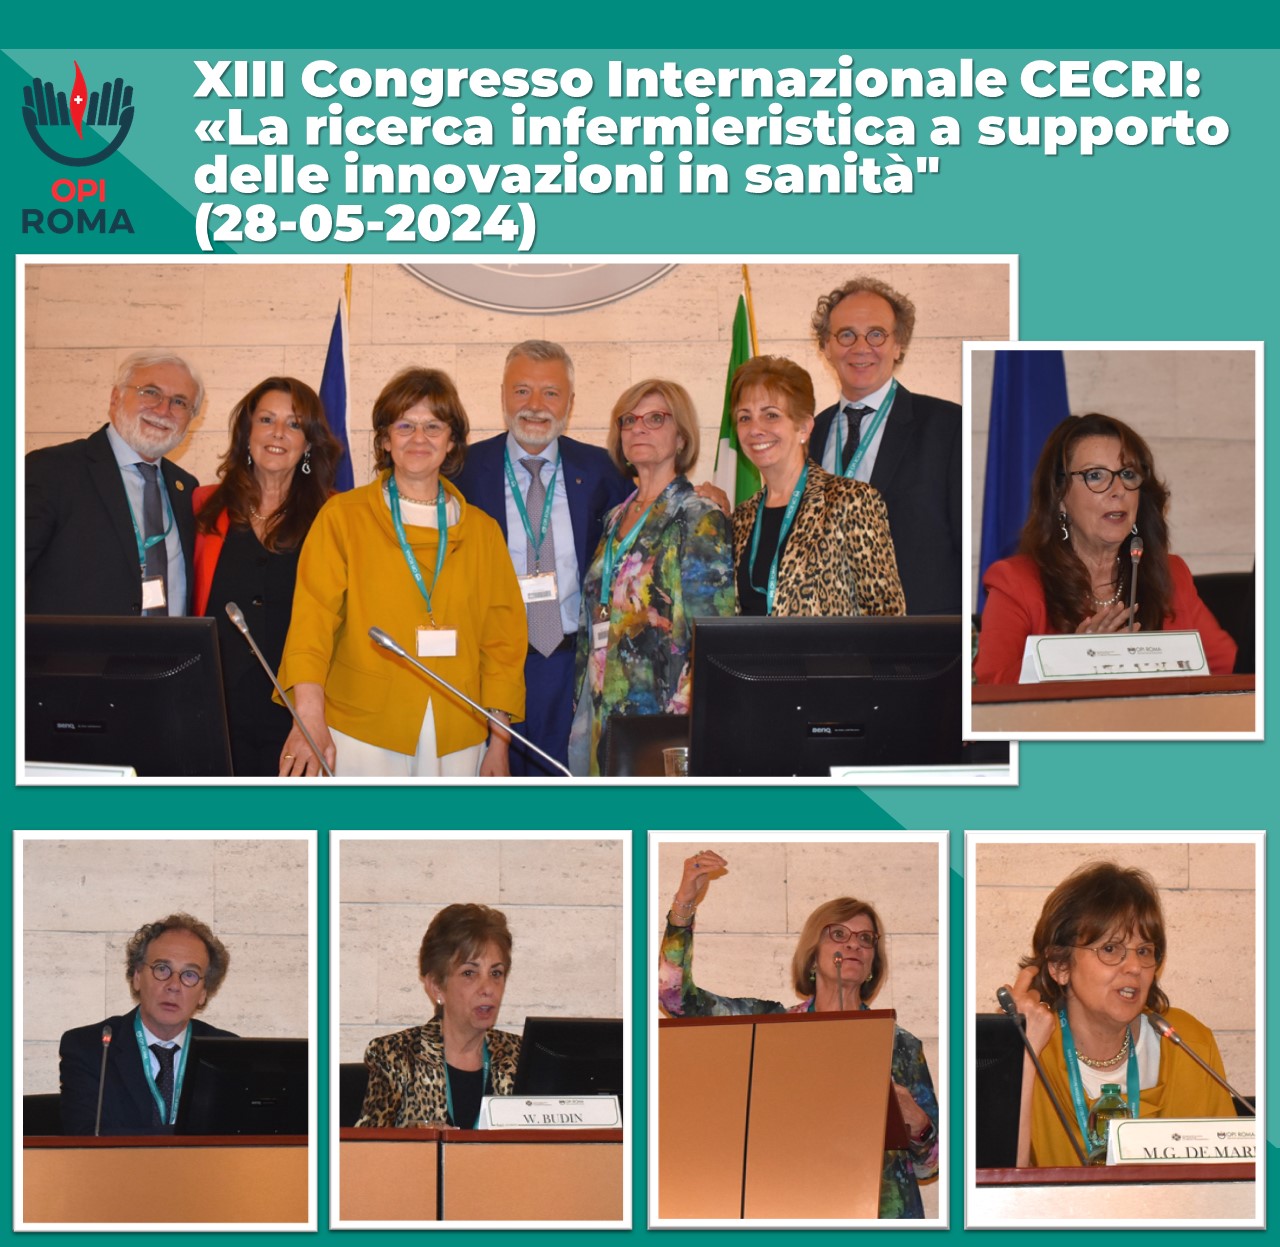 XIII Congresso Internazionale CECRI – La ricerca infermieristica a supporto delle innovazioni in sanità (28-05-2024)